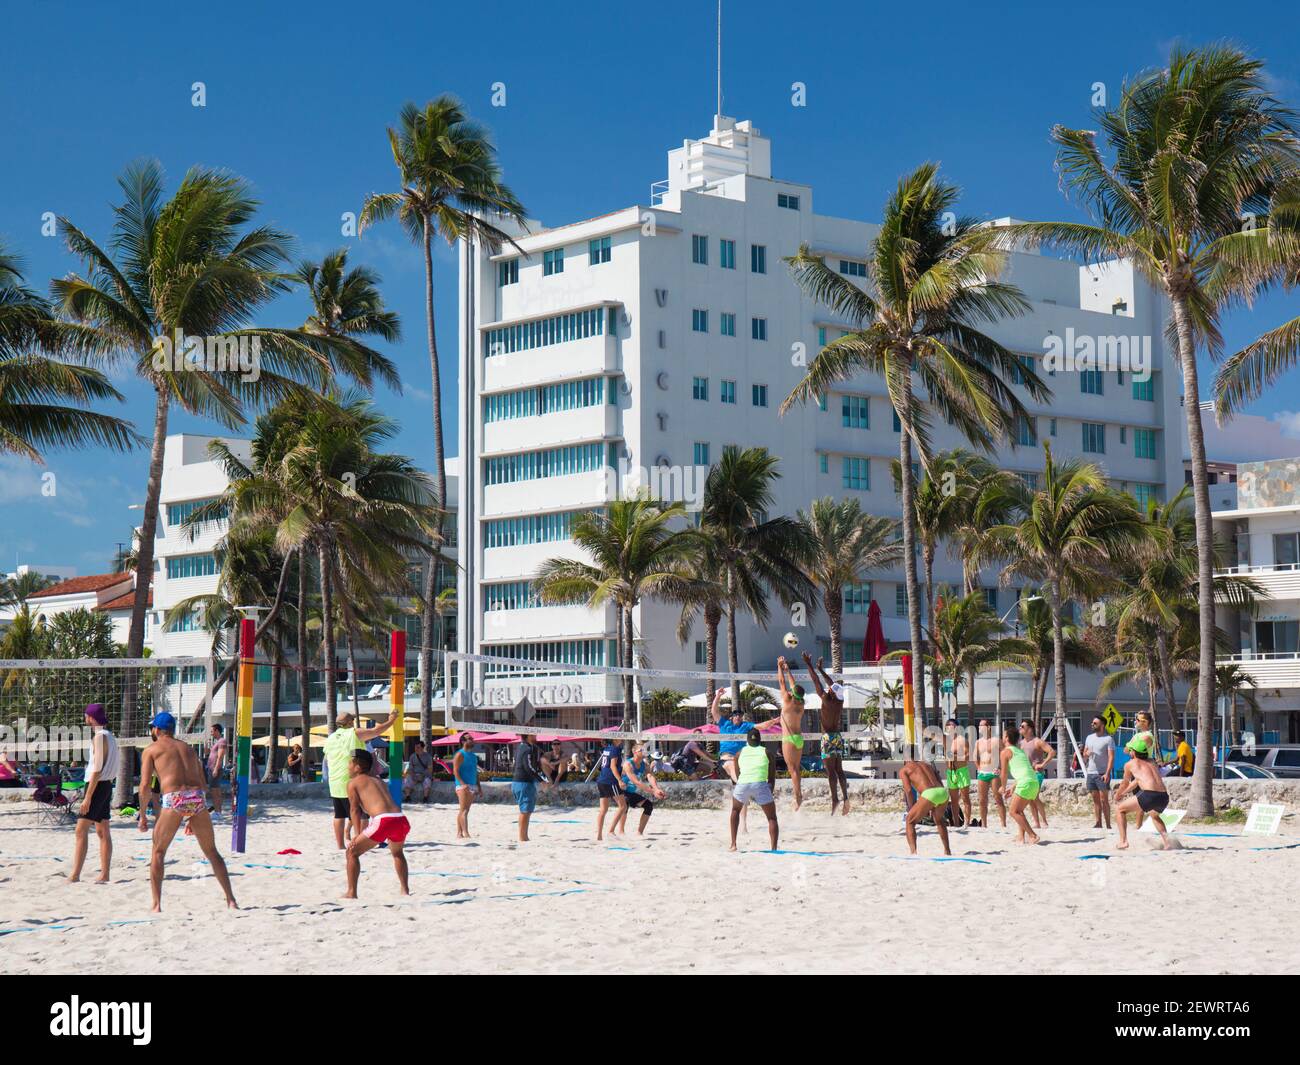 Volleyball de plage le dimanche matin à Lummus Park, Ocean Drive, quartier historique art déco, South Beach, Miami Beach, Floride, États-Unis d'Amérique Banque D'Images